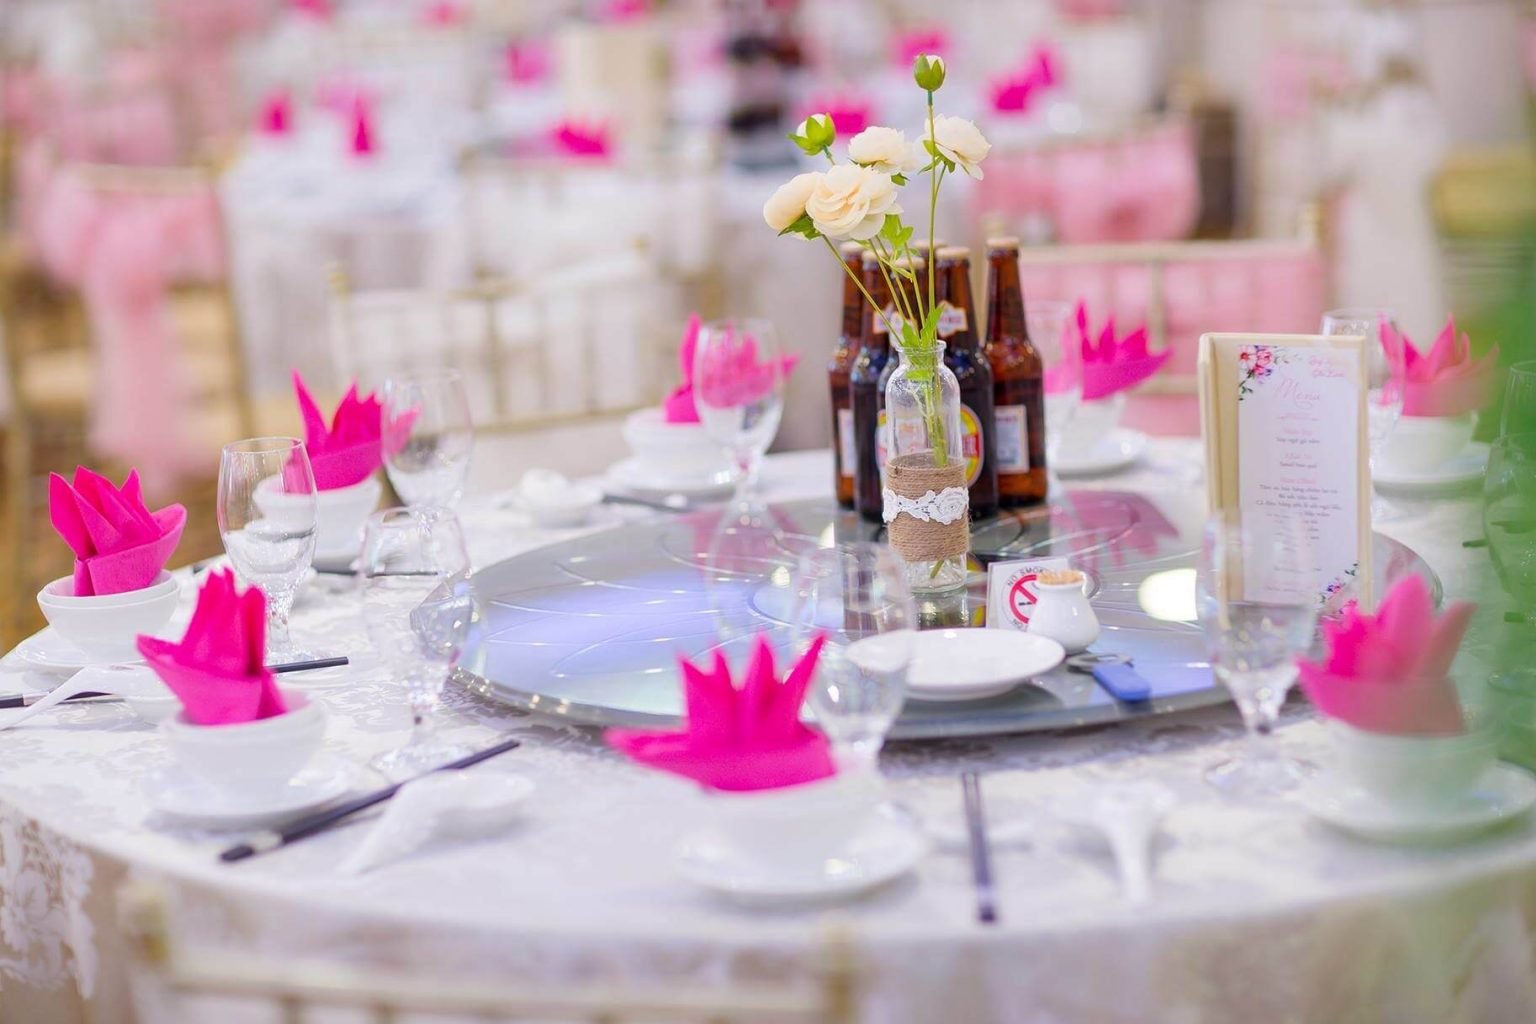 Dịch vụ Wedding Planner có thể giúp bạn tiết kiệm tiền không?